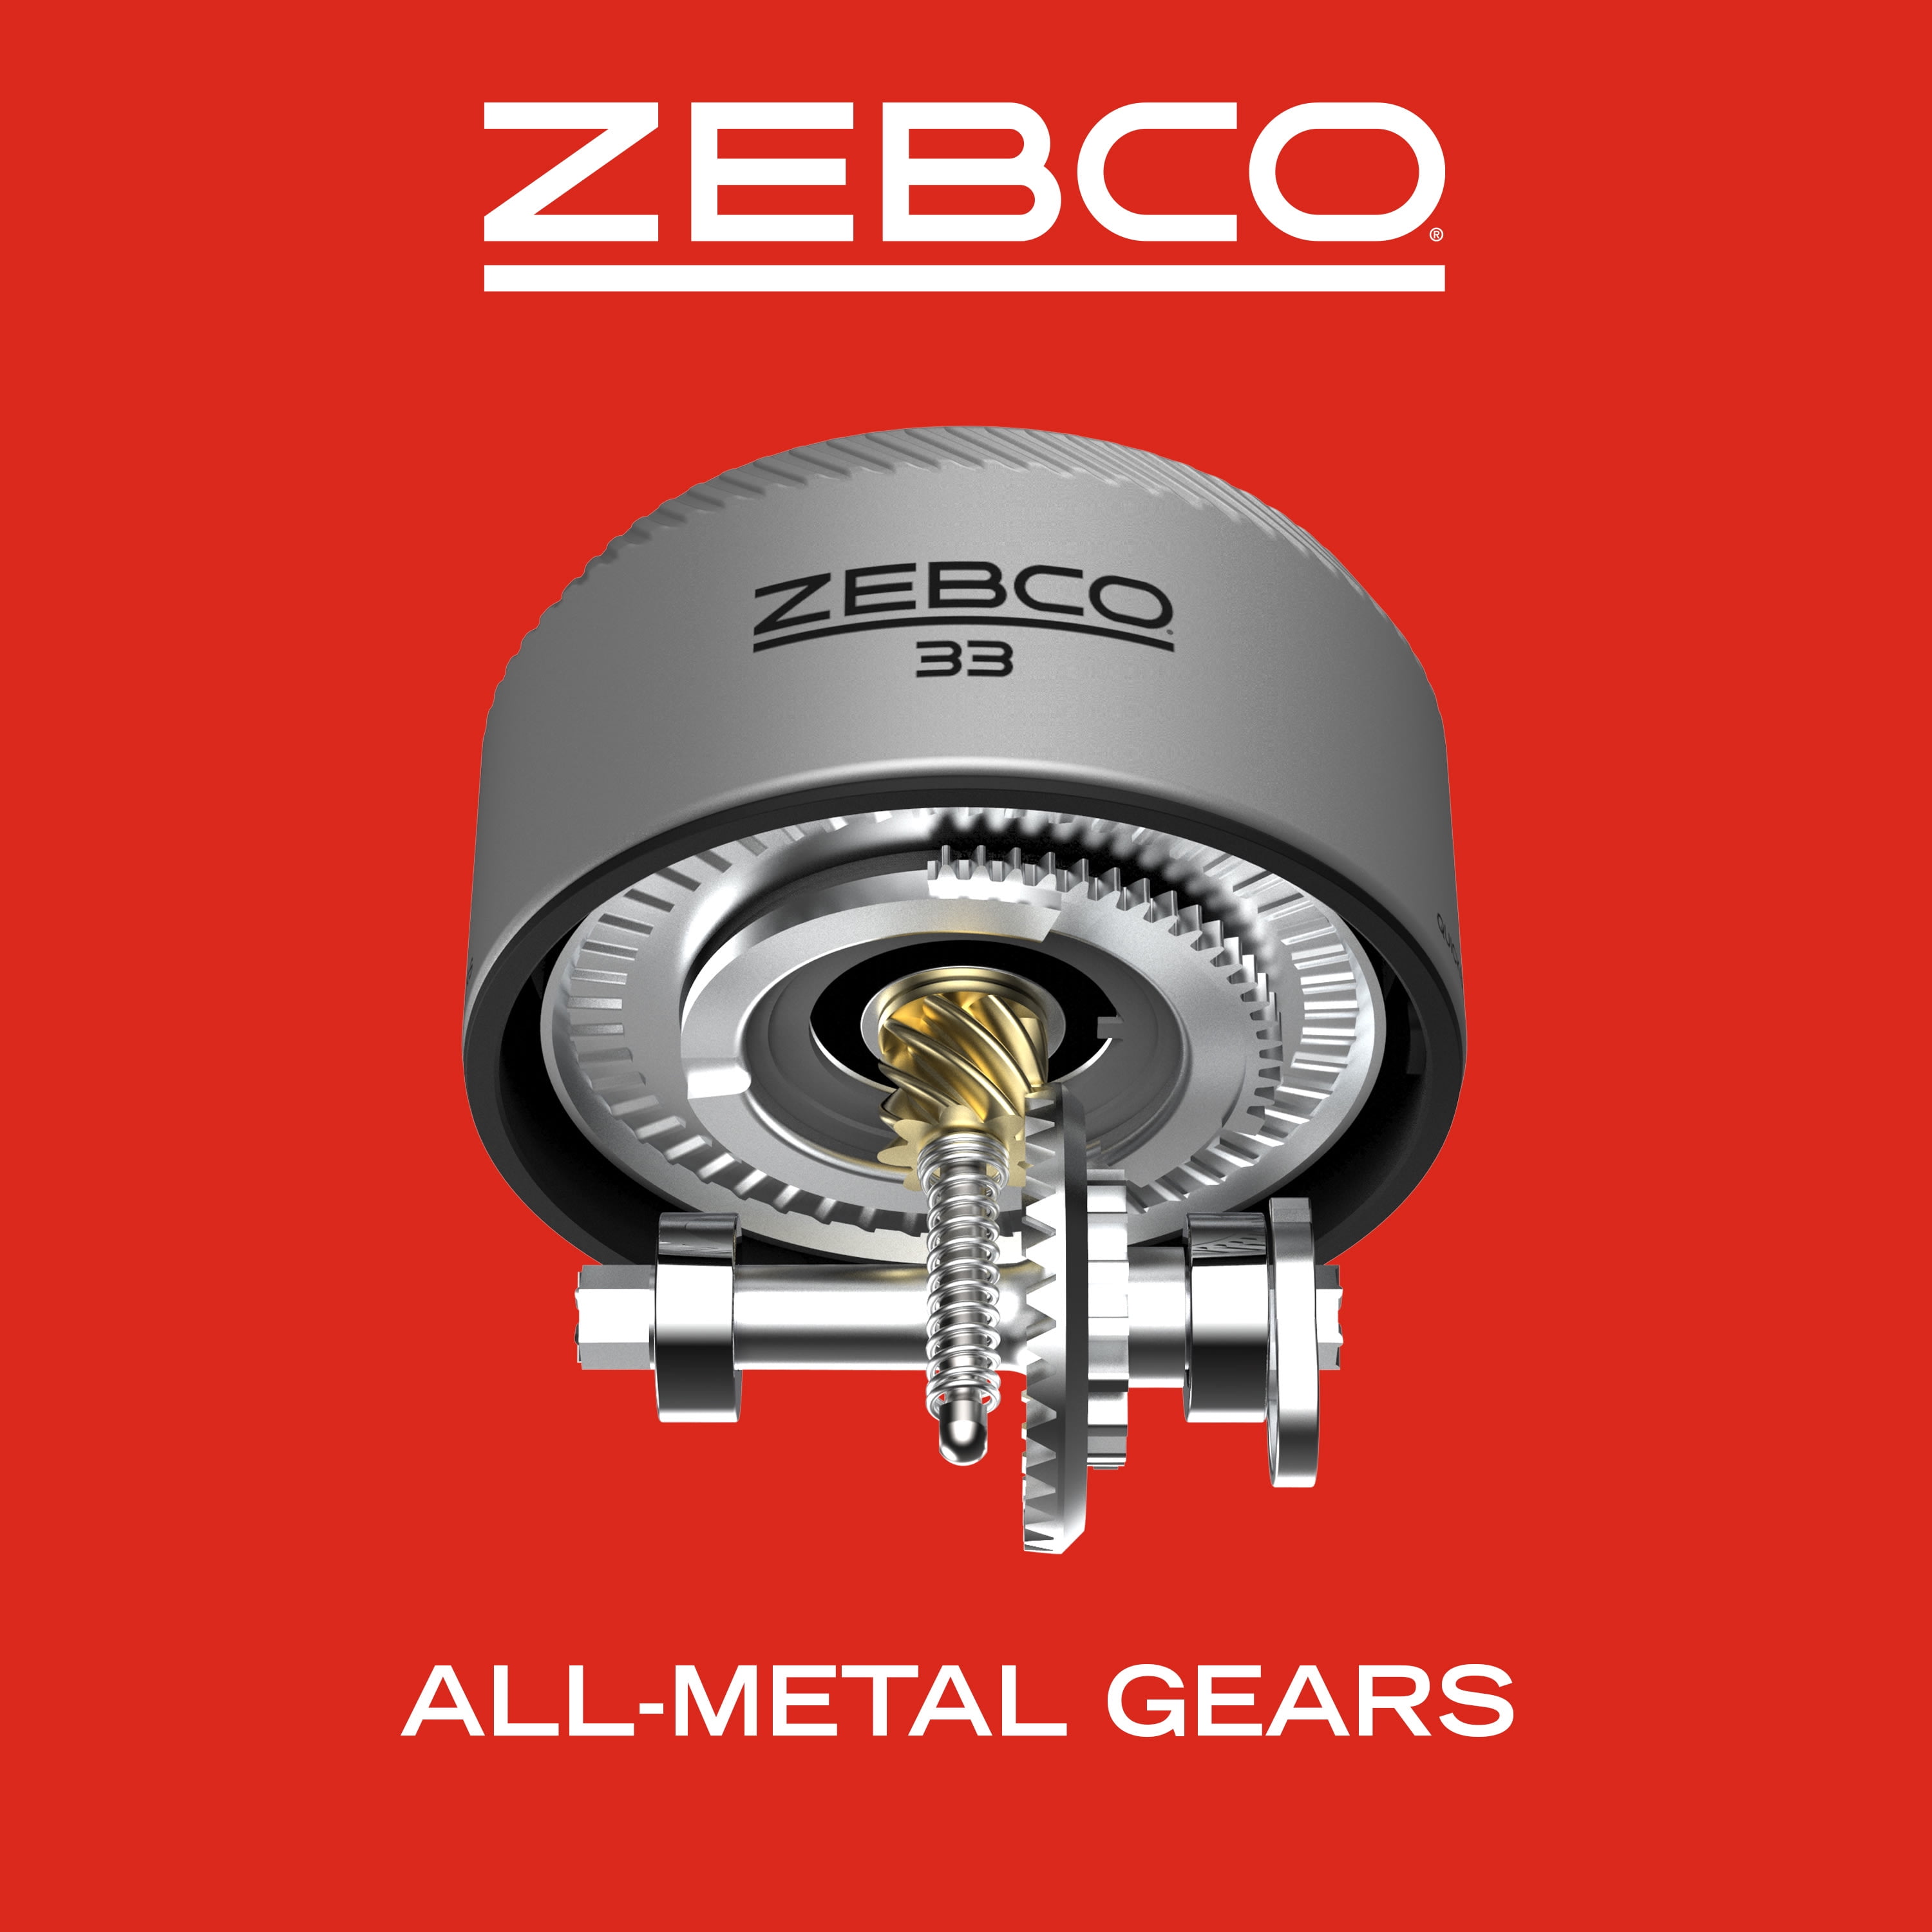 Zebco 33 Platinum Spincast Fishing Reel 